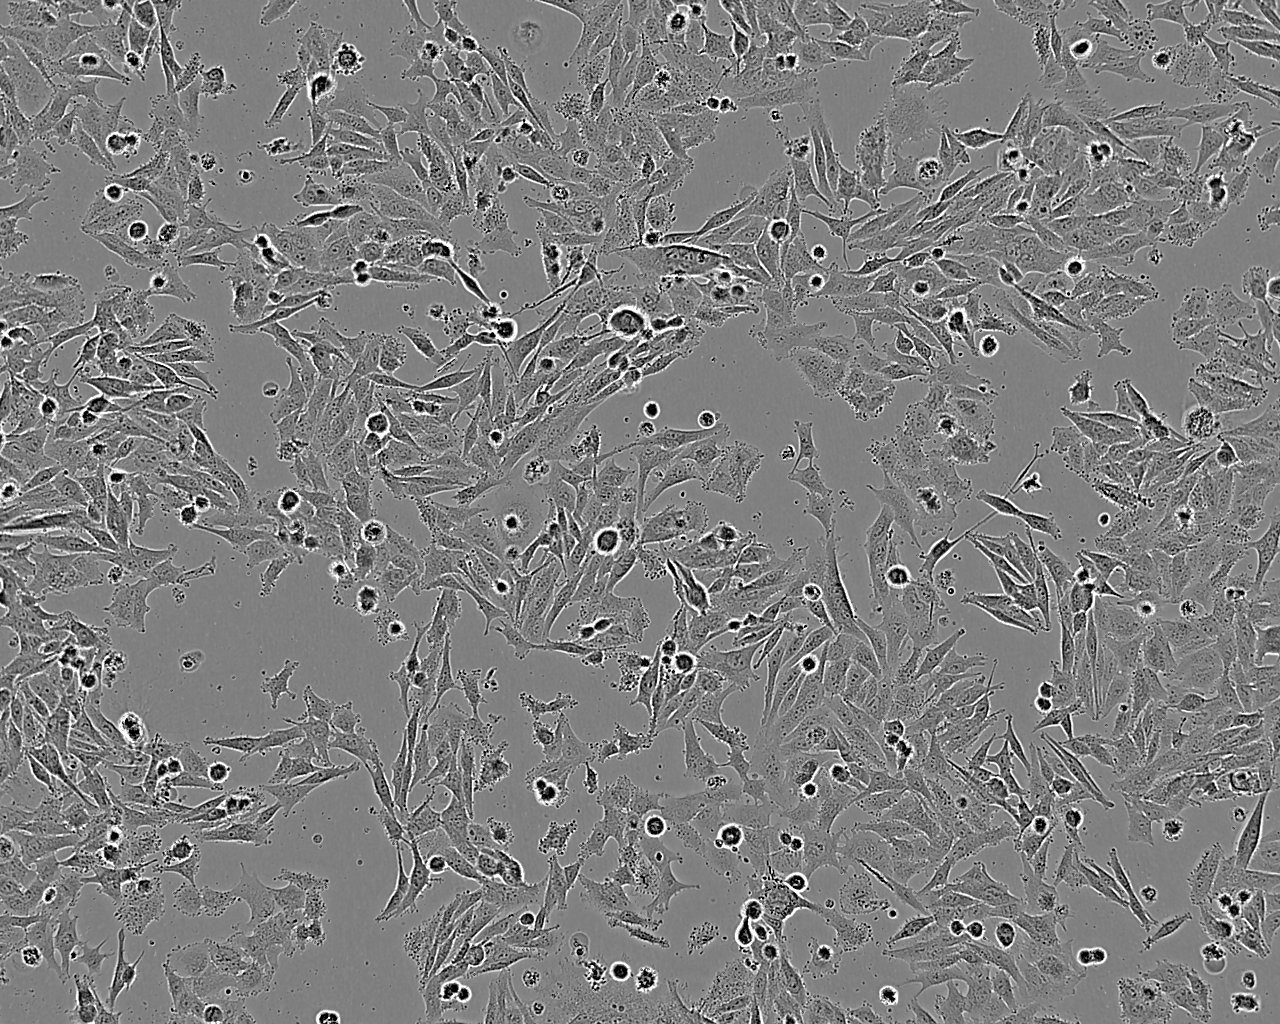 SLMT-1 Cell:人食管鳞癌细胞系,SLMT-1 Cell